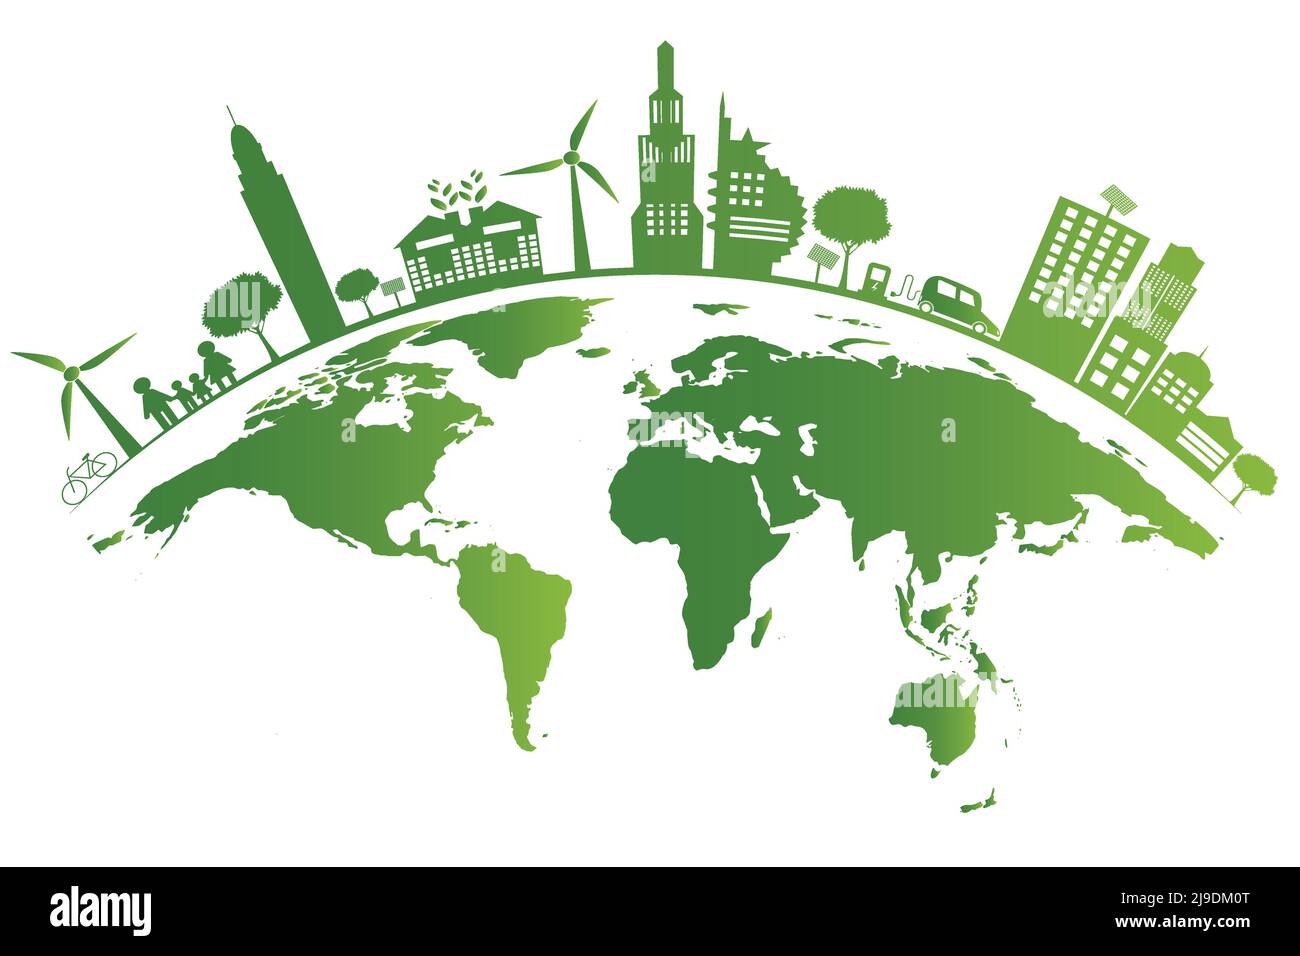 Ecology.Green città aiutare il mondo, la terra con eco-friendly concetto idee, illustrazione vettoriale Illustrazione Vettoriale